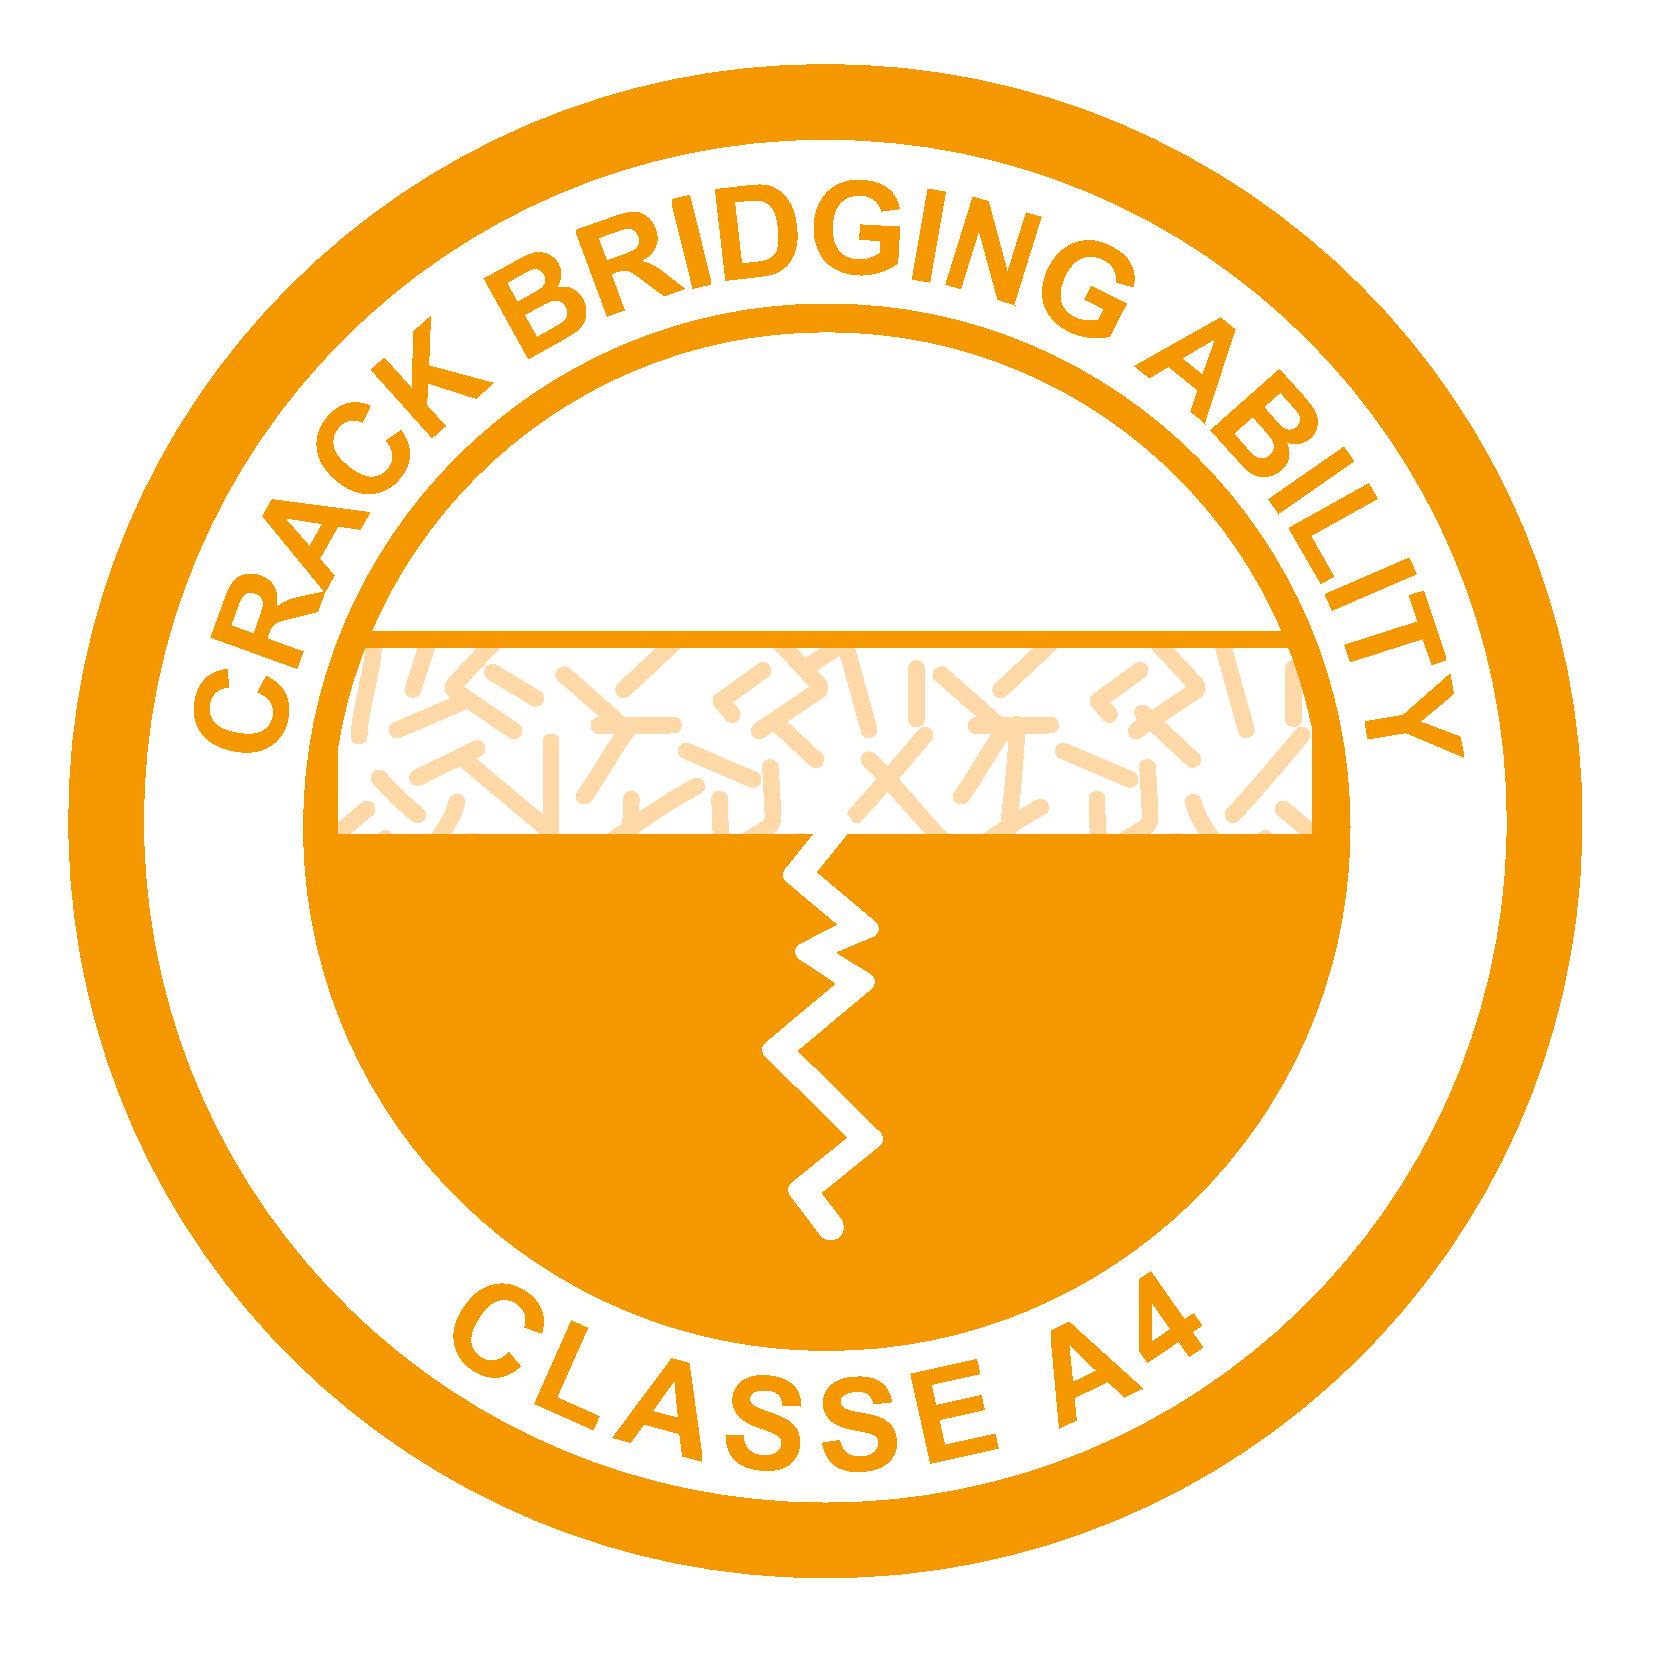 Crack bridging ability 